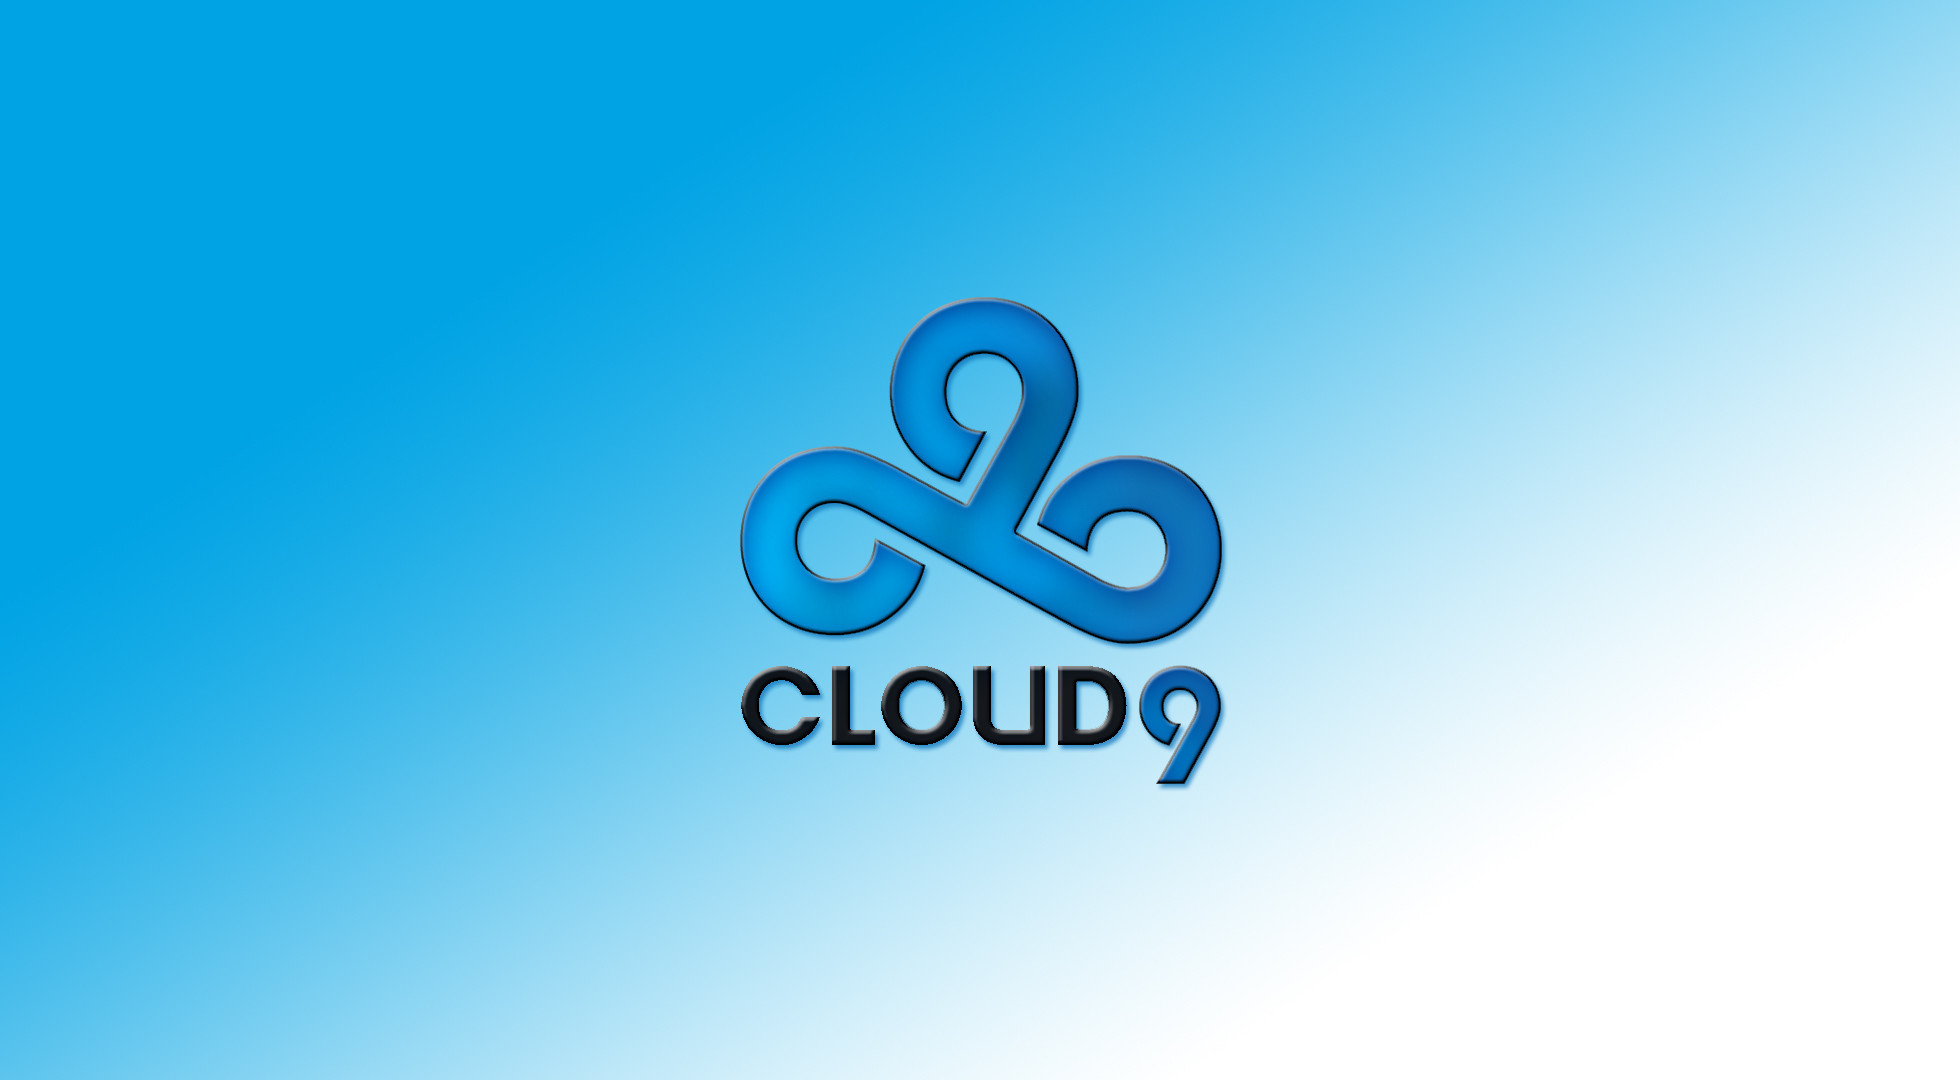 cloud 9 iphone wallpaper,blau,text,schriftart,aqua,himmel